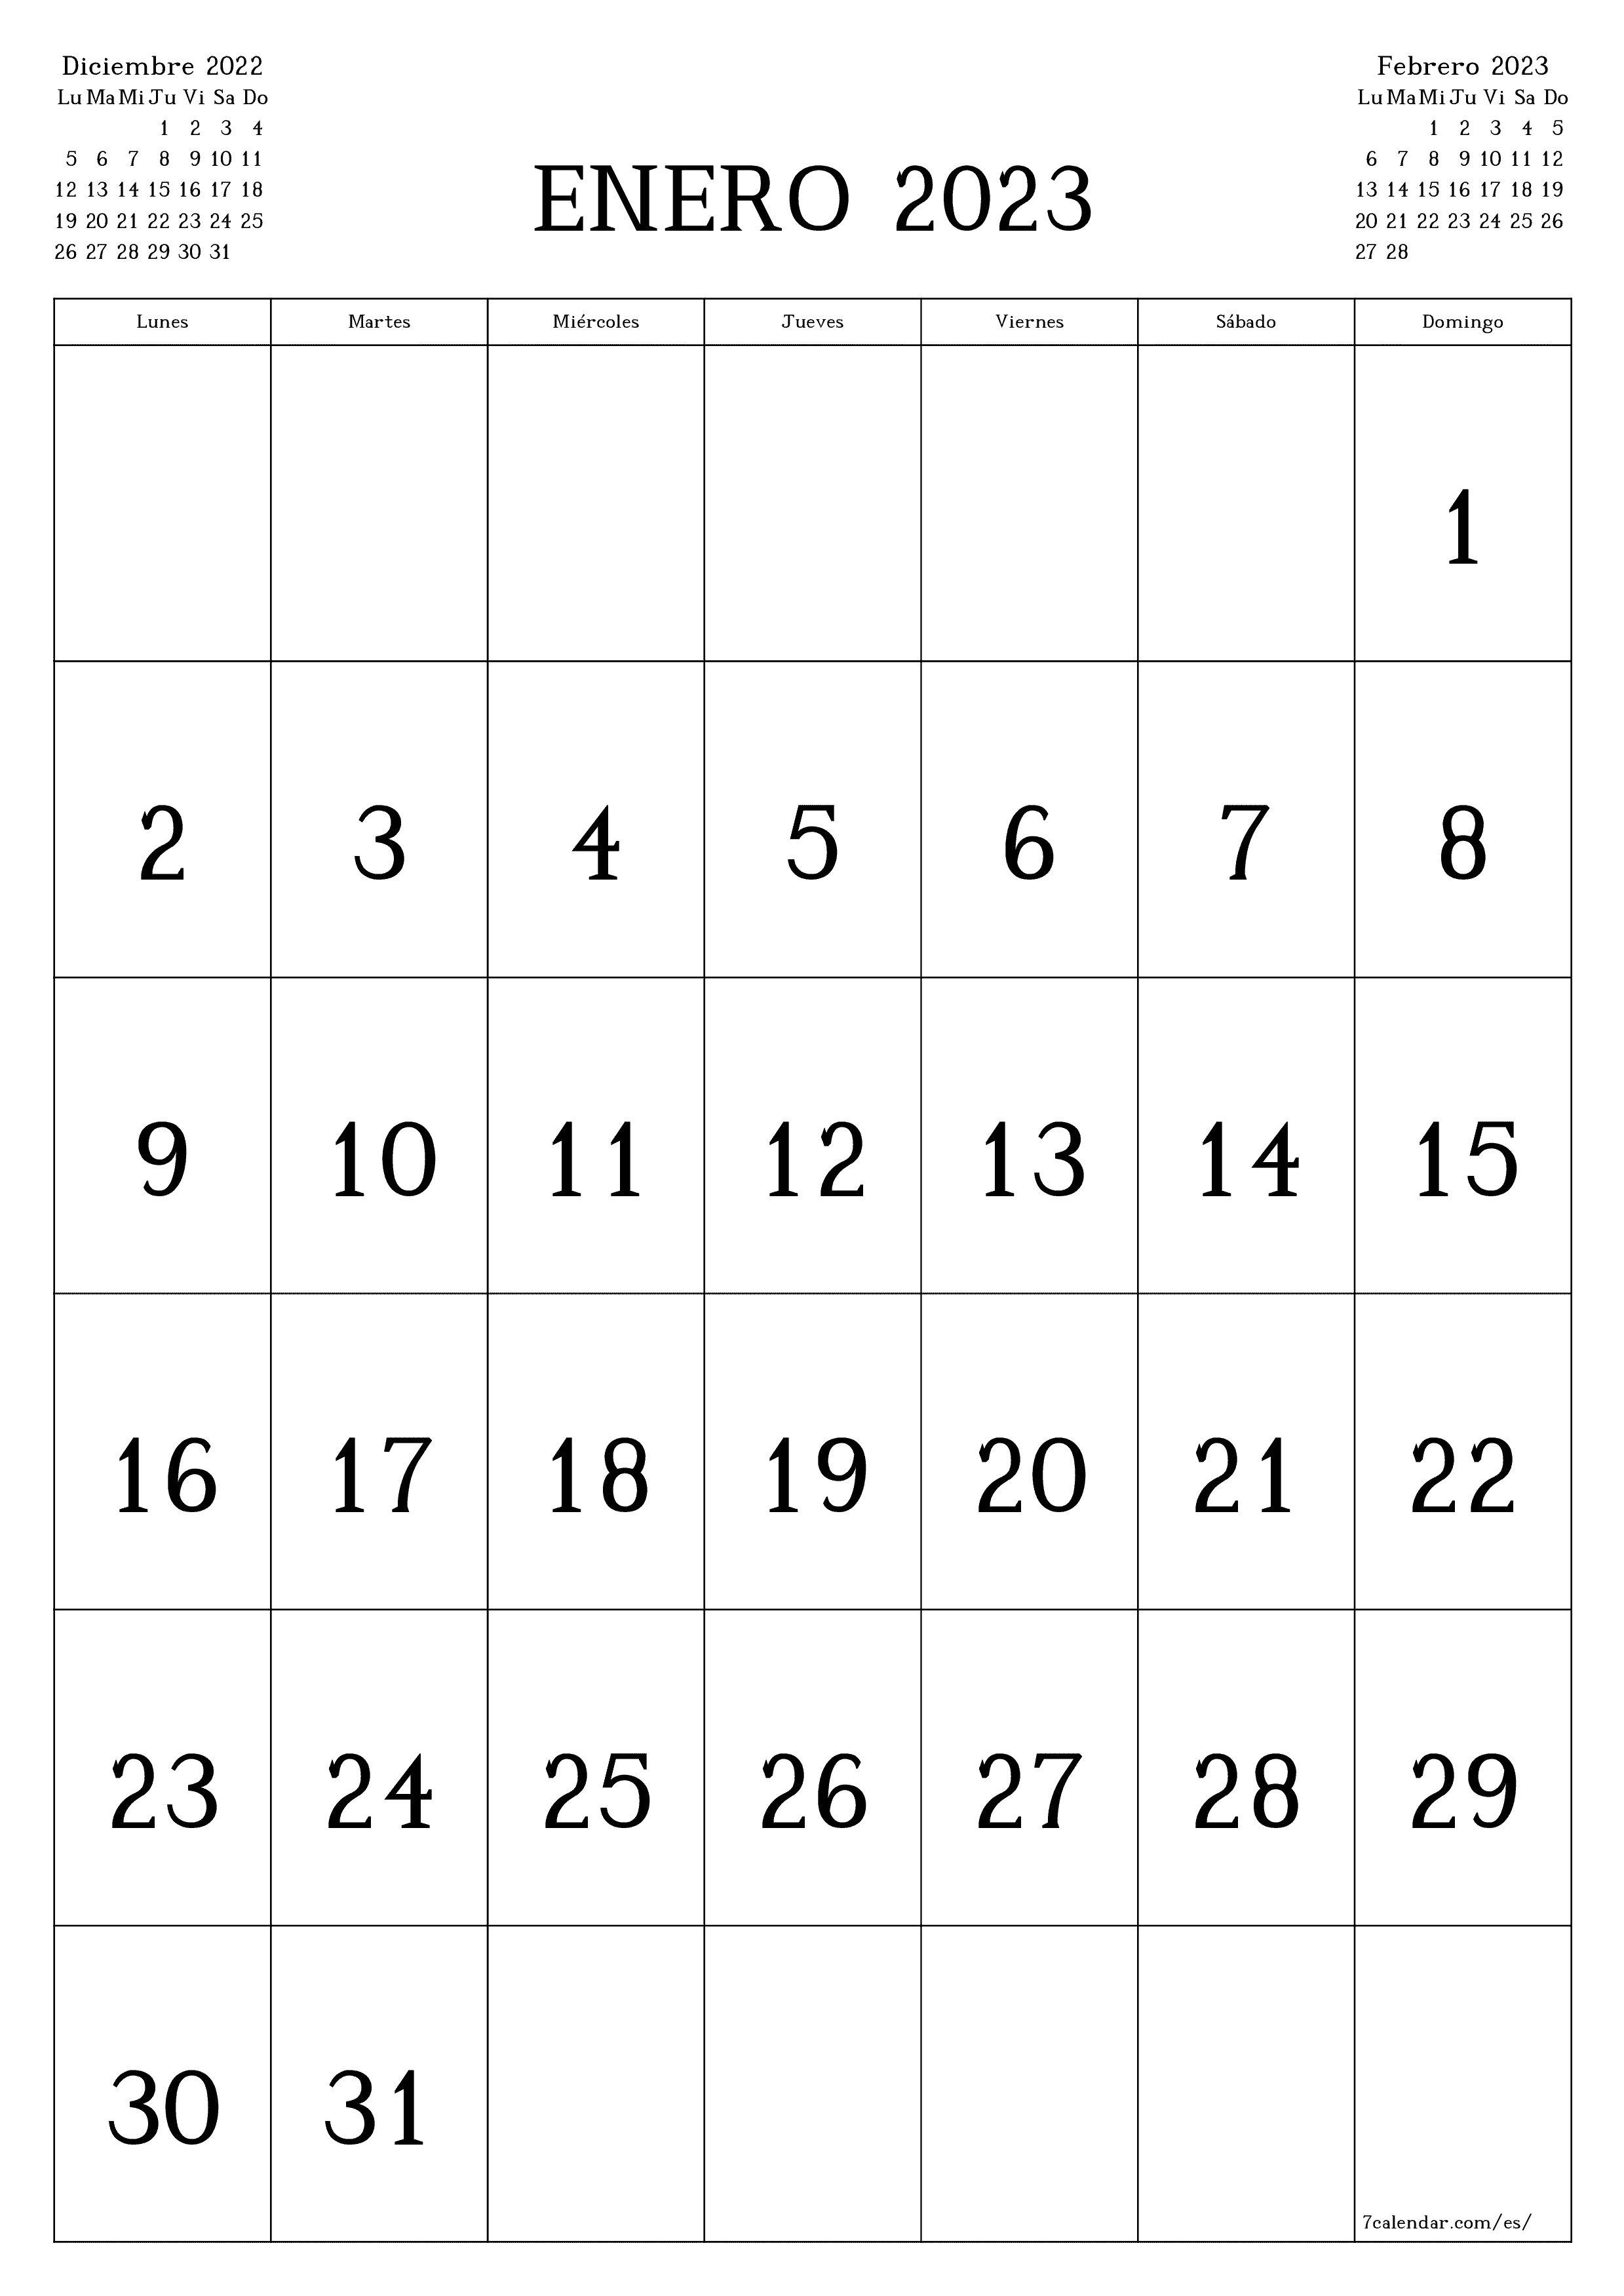 Planificador mensual vacío para el mes Enero 2023 con notas, guardar e imprimir en PDF PNG Spanish - 7calendar.com